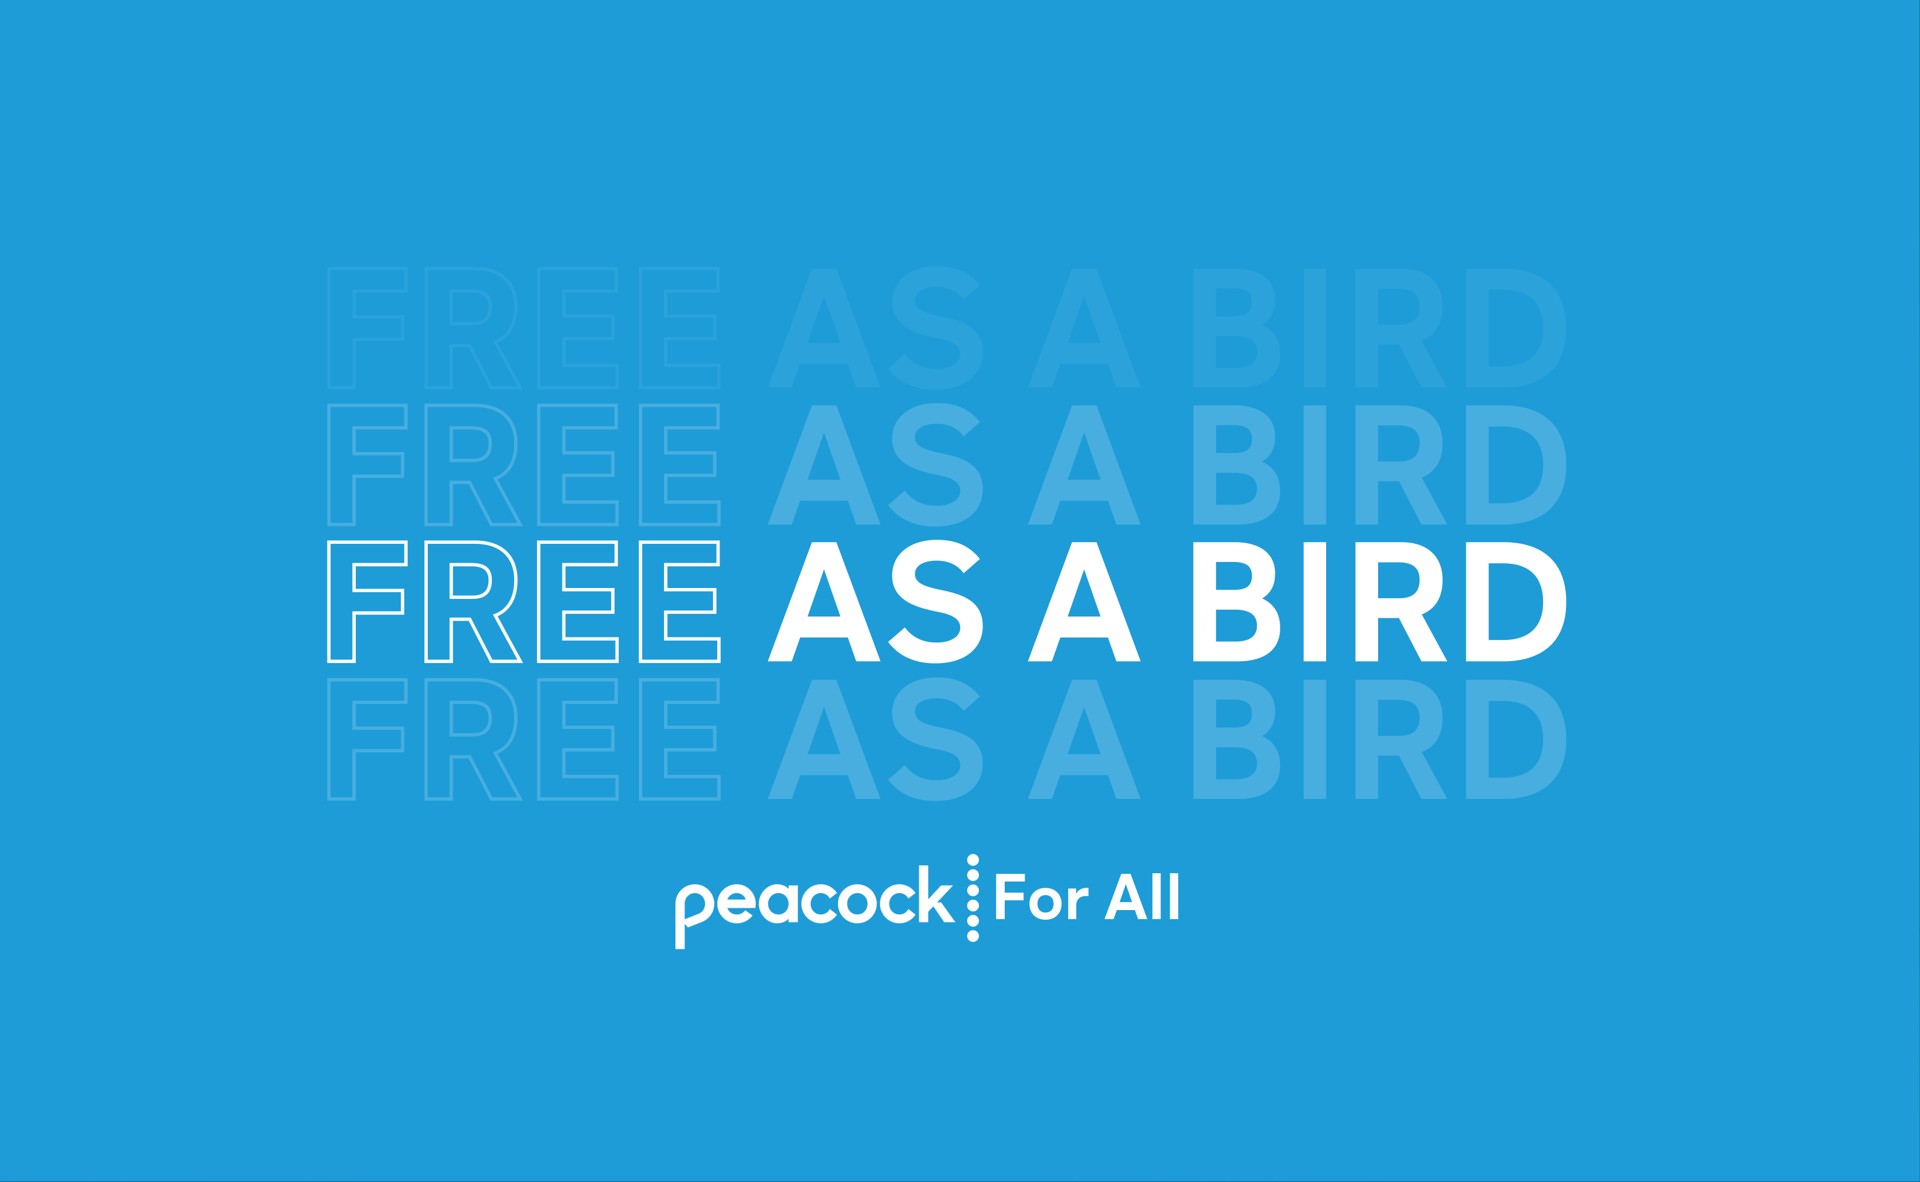 free as a bird for all peacock i | Comcast